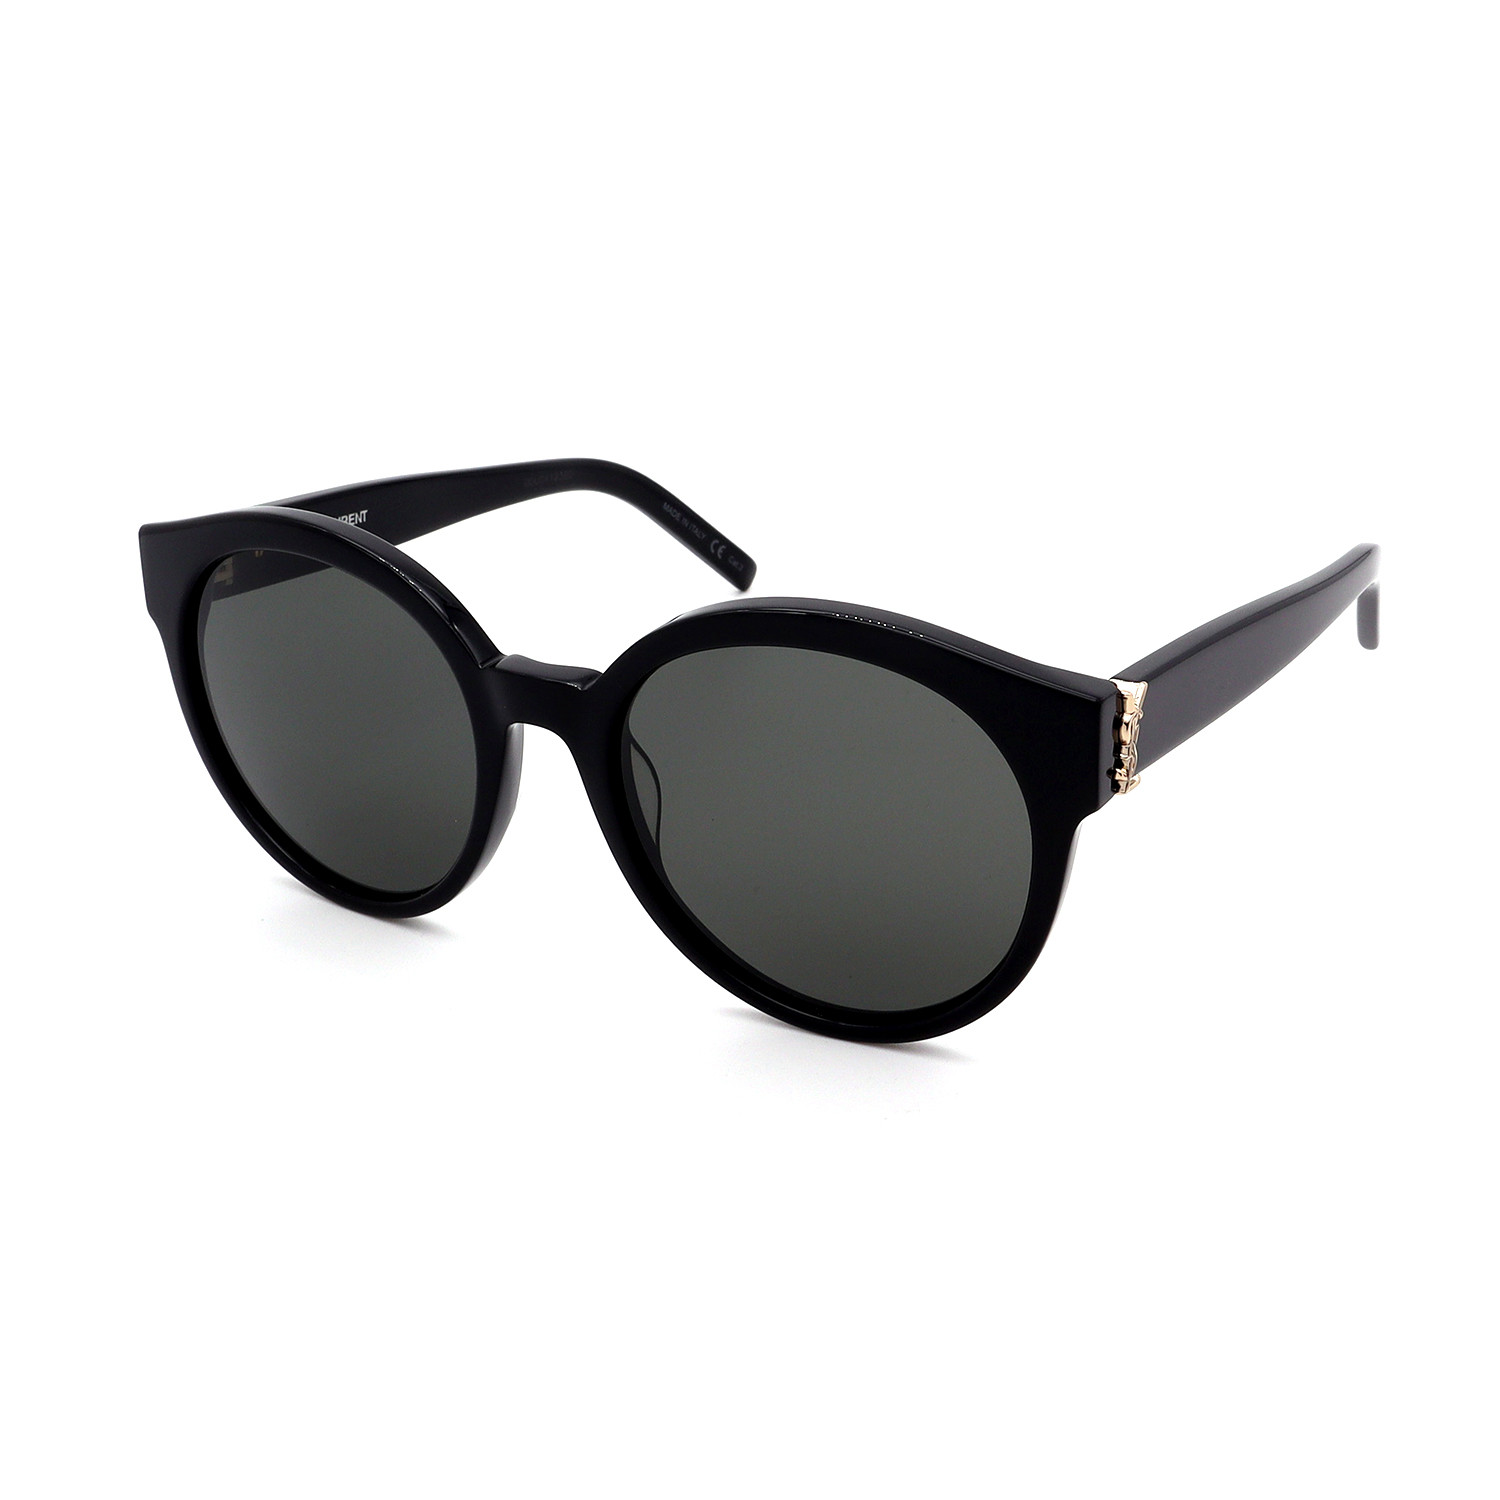 Unisex SLM31-003-54 Round Sunglasses // Black - Saint Laurent - Touch